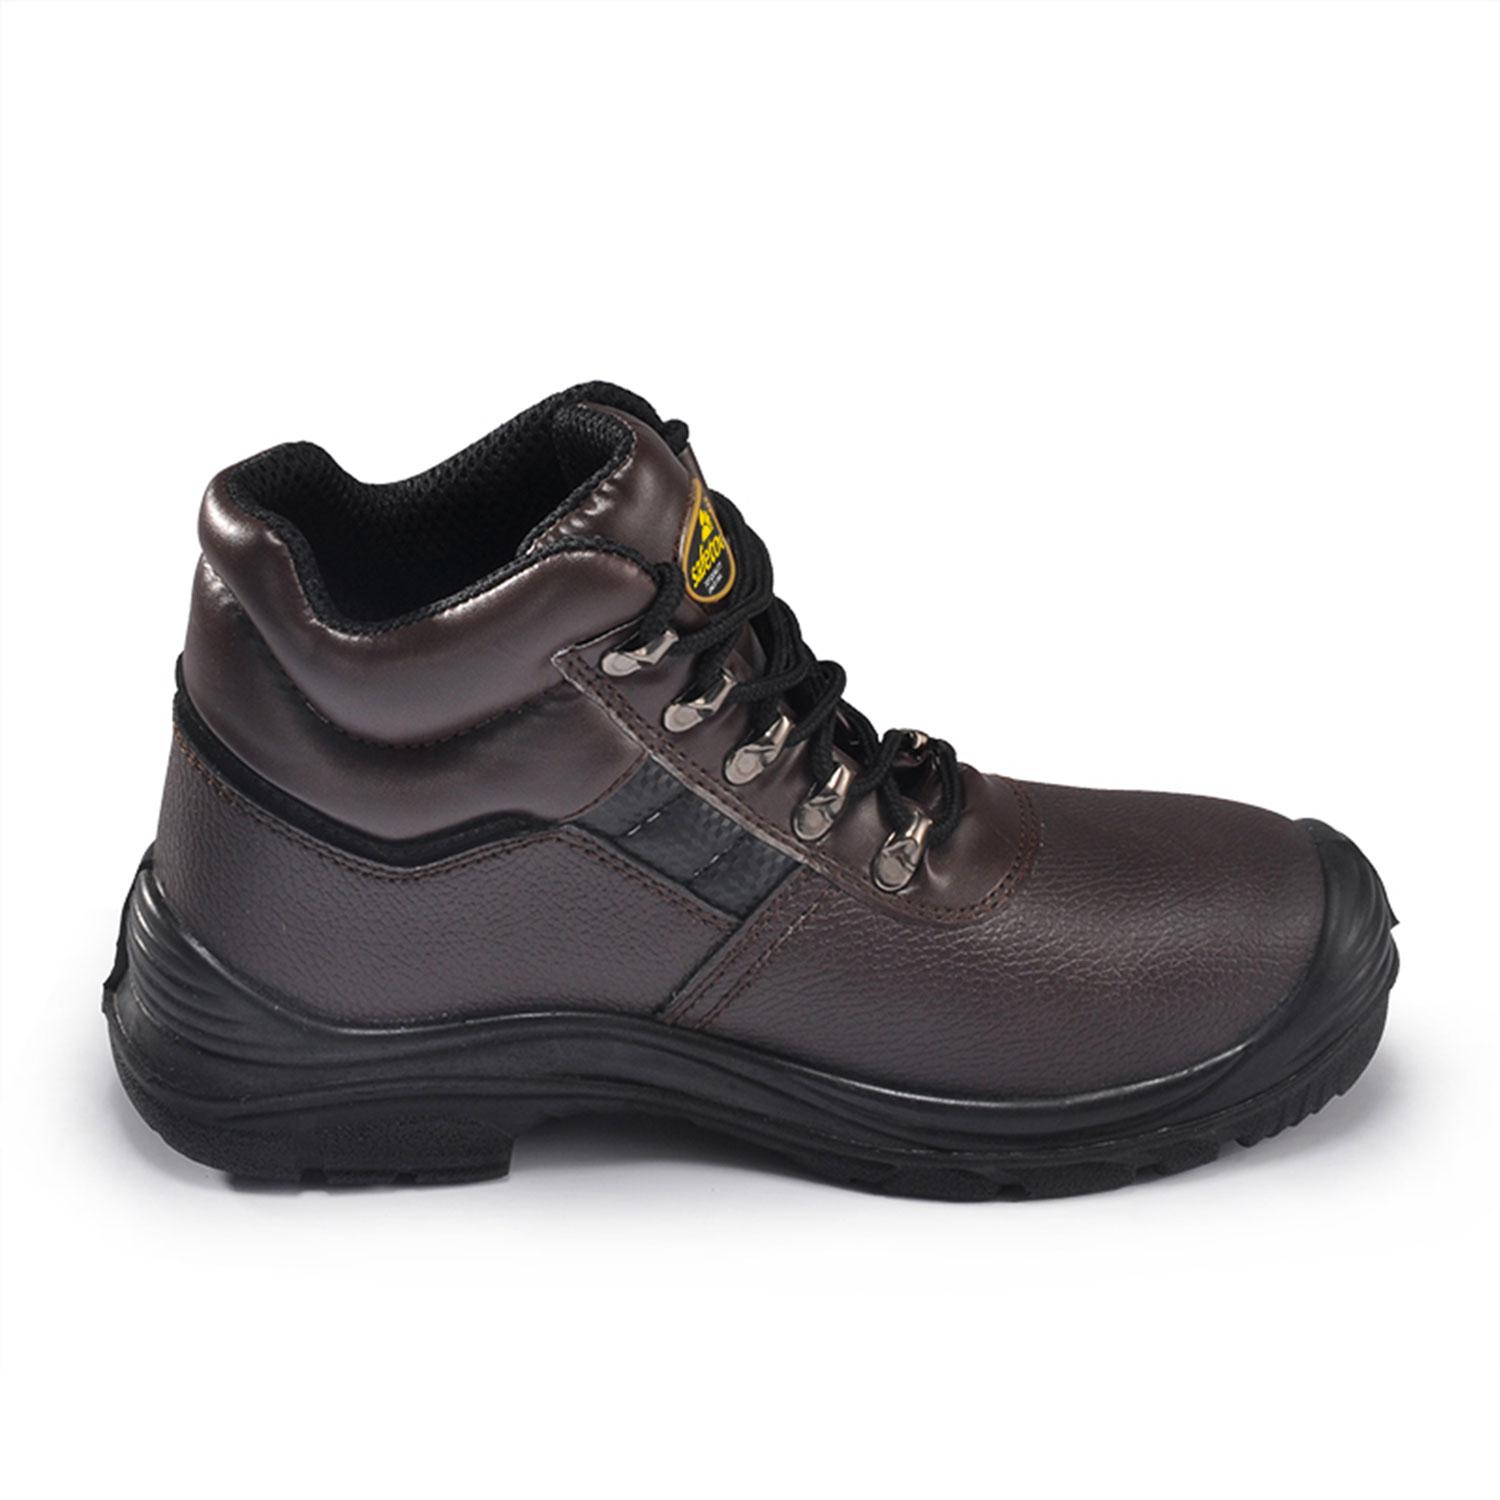 Zapato de Seguridad Cuero Marrón M-8027